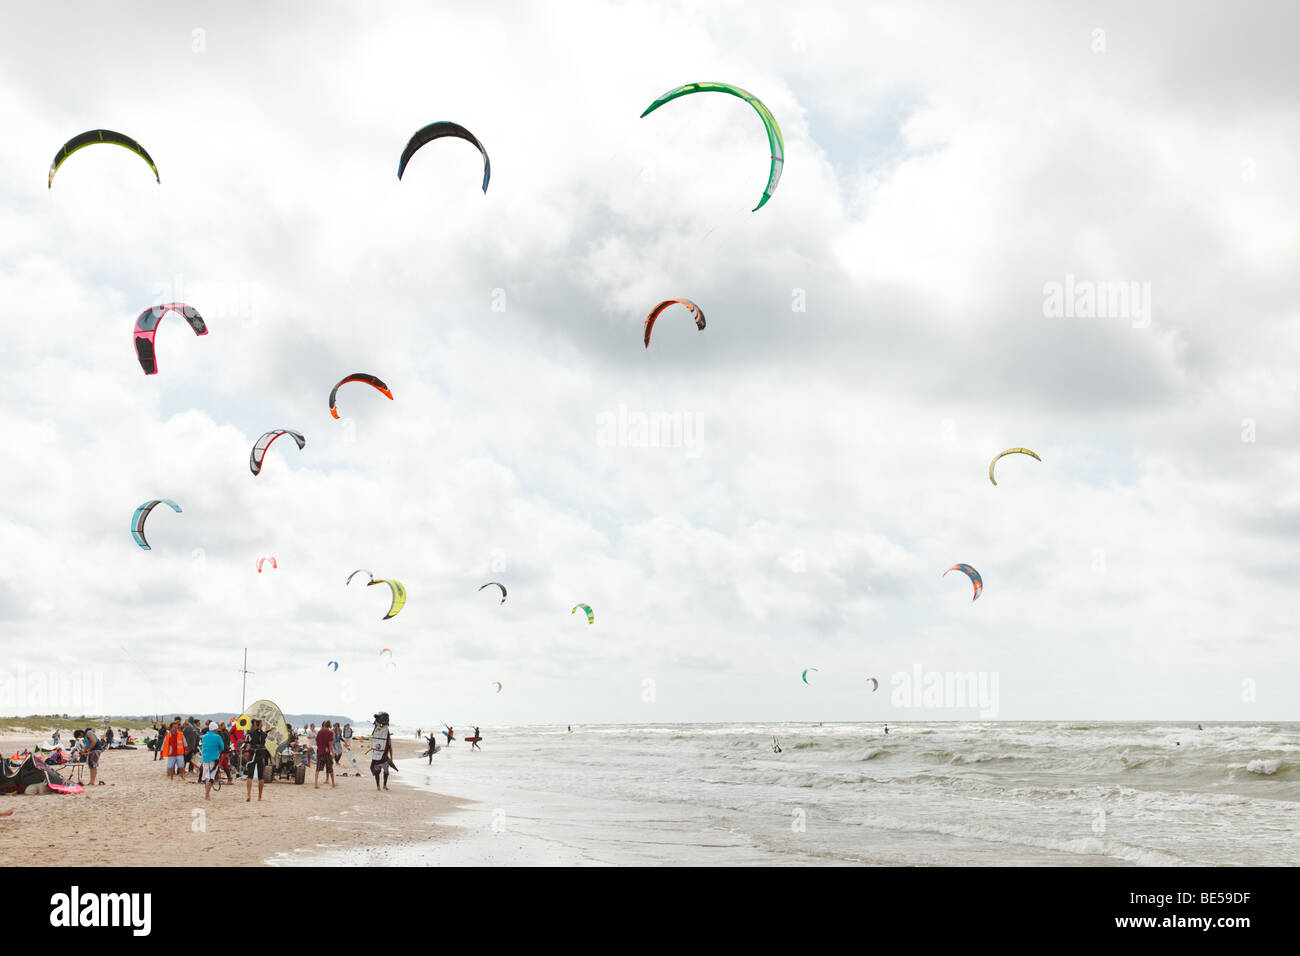 Kiteboarding-Wettbewerb mit vielen aktiven Menschen und Drachen fliegt hoch in den Himmel Stockfoto